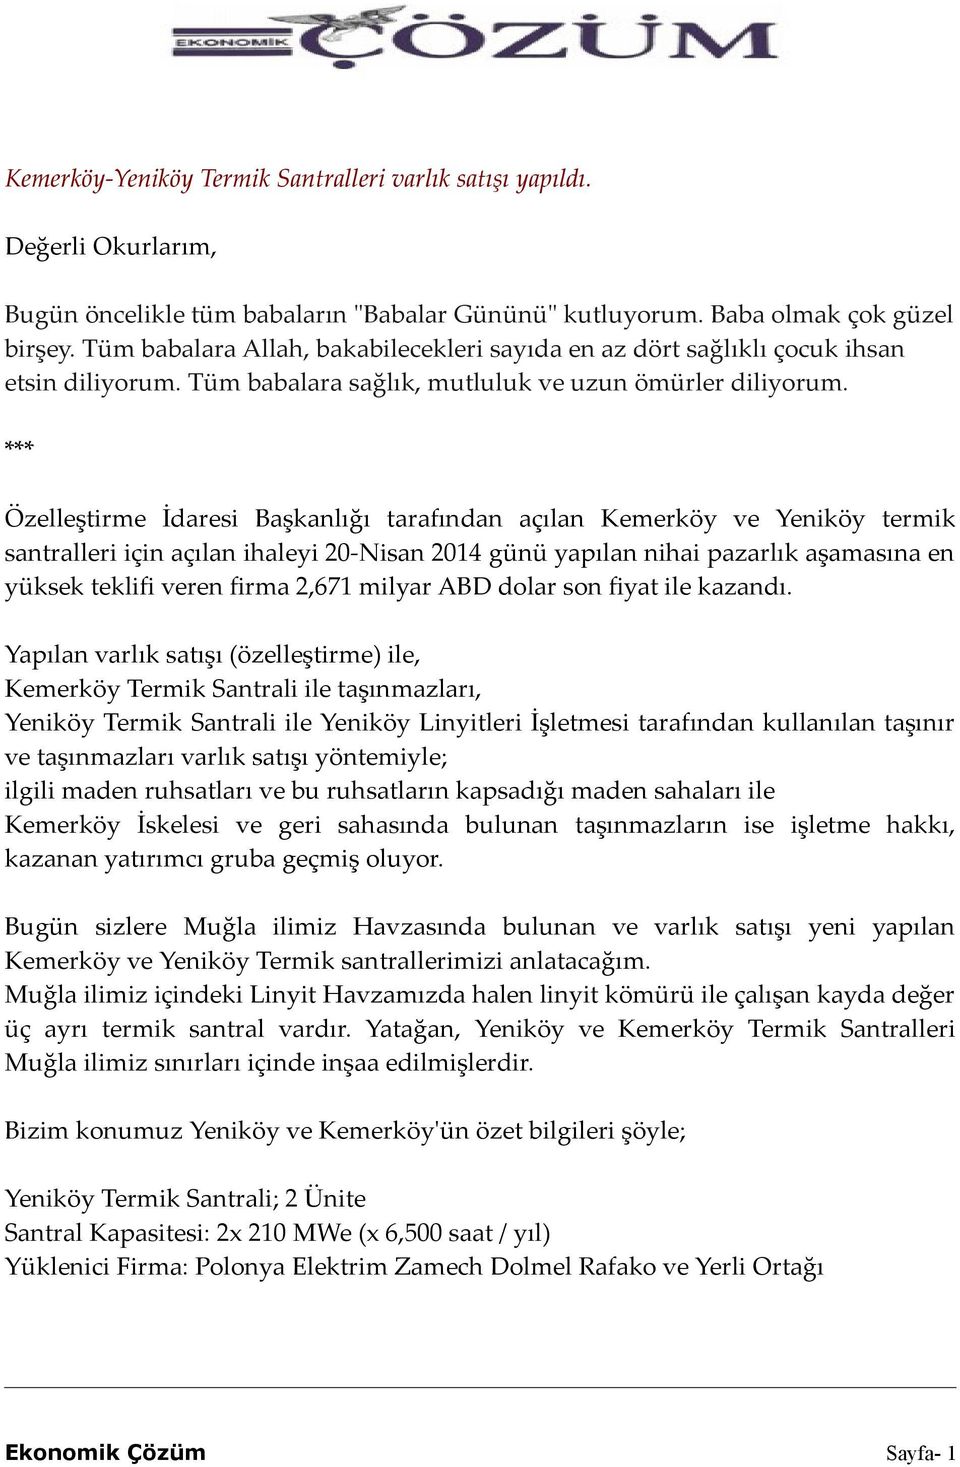 *** Özelleştirme İdaresi Başkanlığı tarafından açılan Kemerköy ve Yeniköy termik santralleri için açılan ihaleyi 20-Nisan 2014 günü yapılan nihai pazarlık aşamasına en yüksek teklifi veren firma